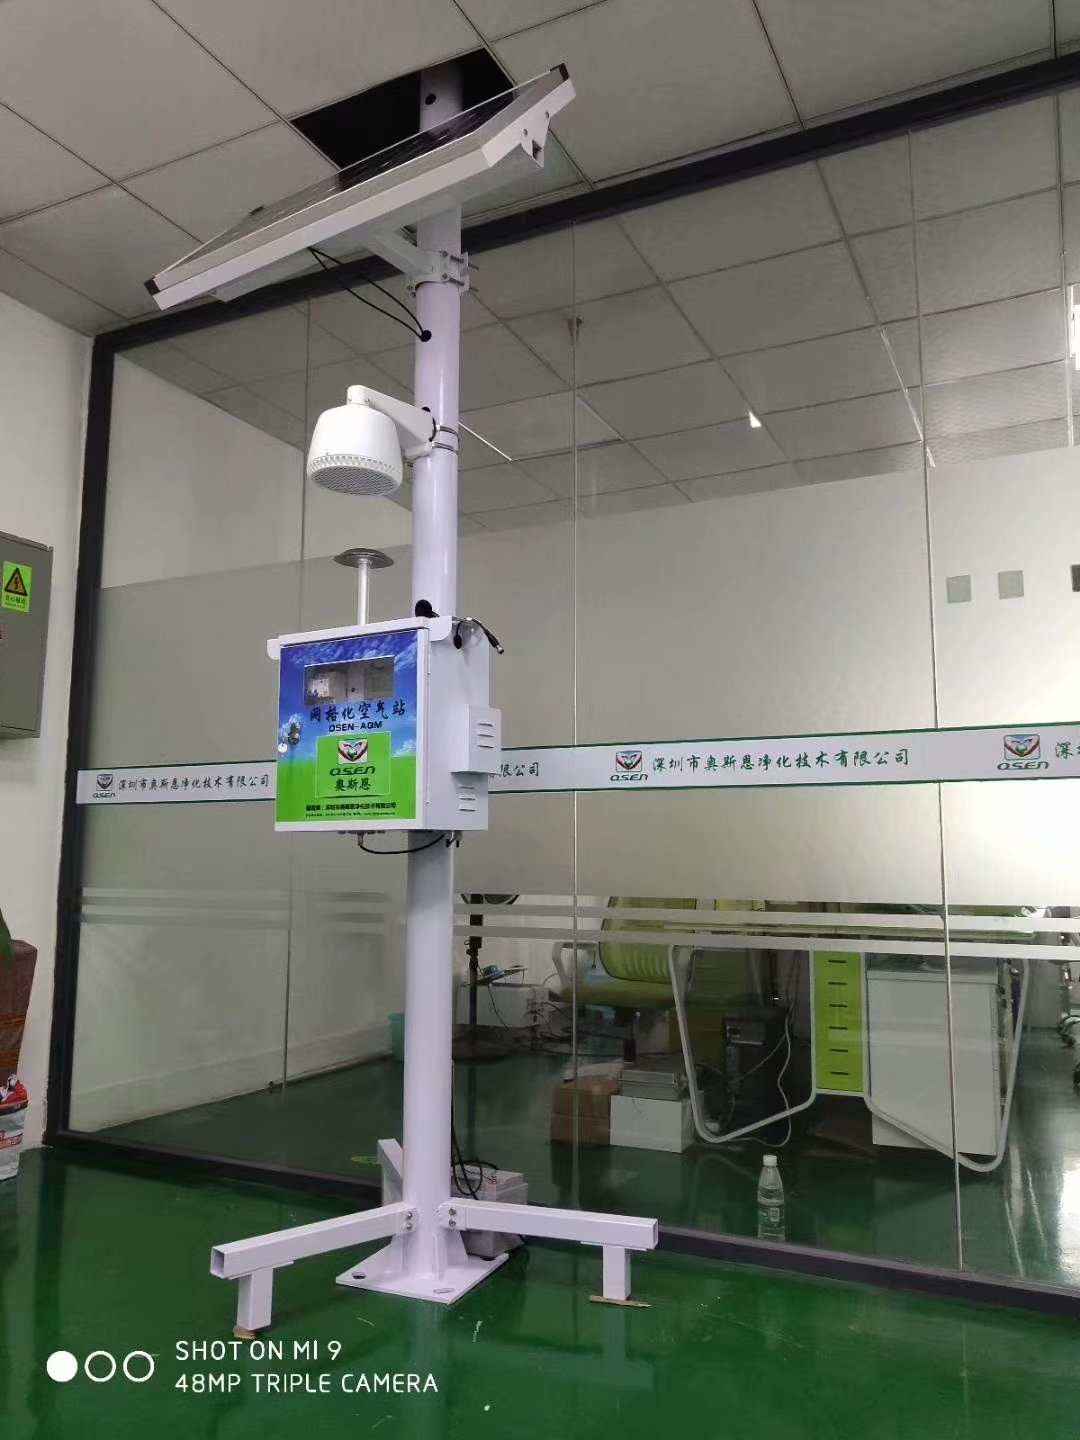 柳州大气网格化监测系统